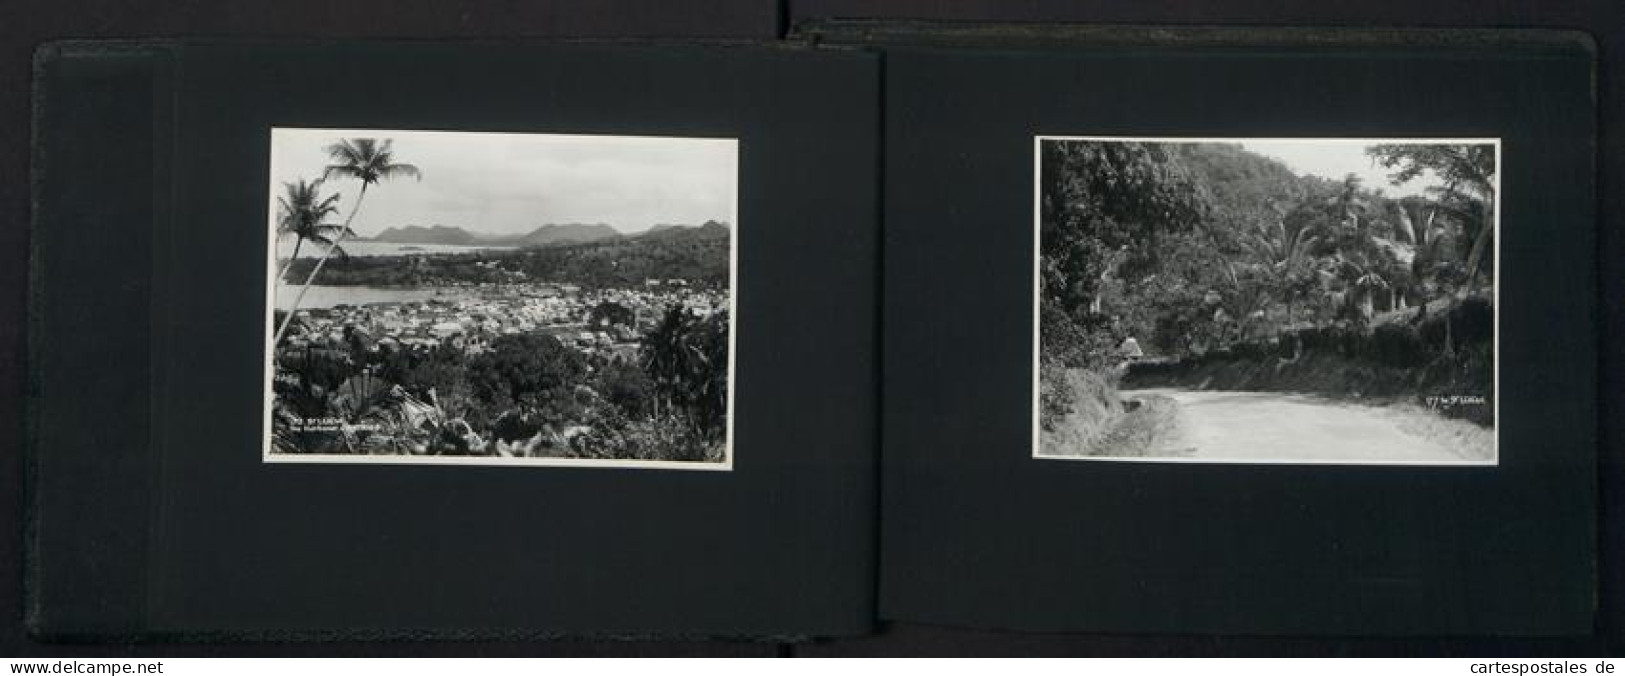 2 Fotoalben Mit 99 Fotografien, Ansicht Panama, Karibikreise, Madeira, Antigua, Jamaica, Grenada, Barbados, Trinidad  - Alben & Sammlungen